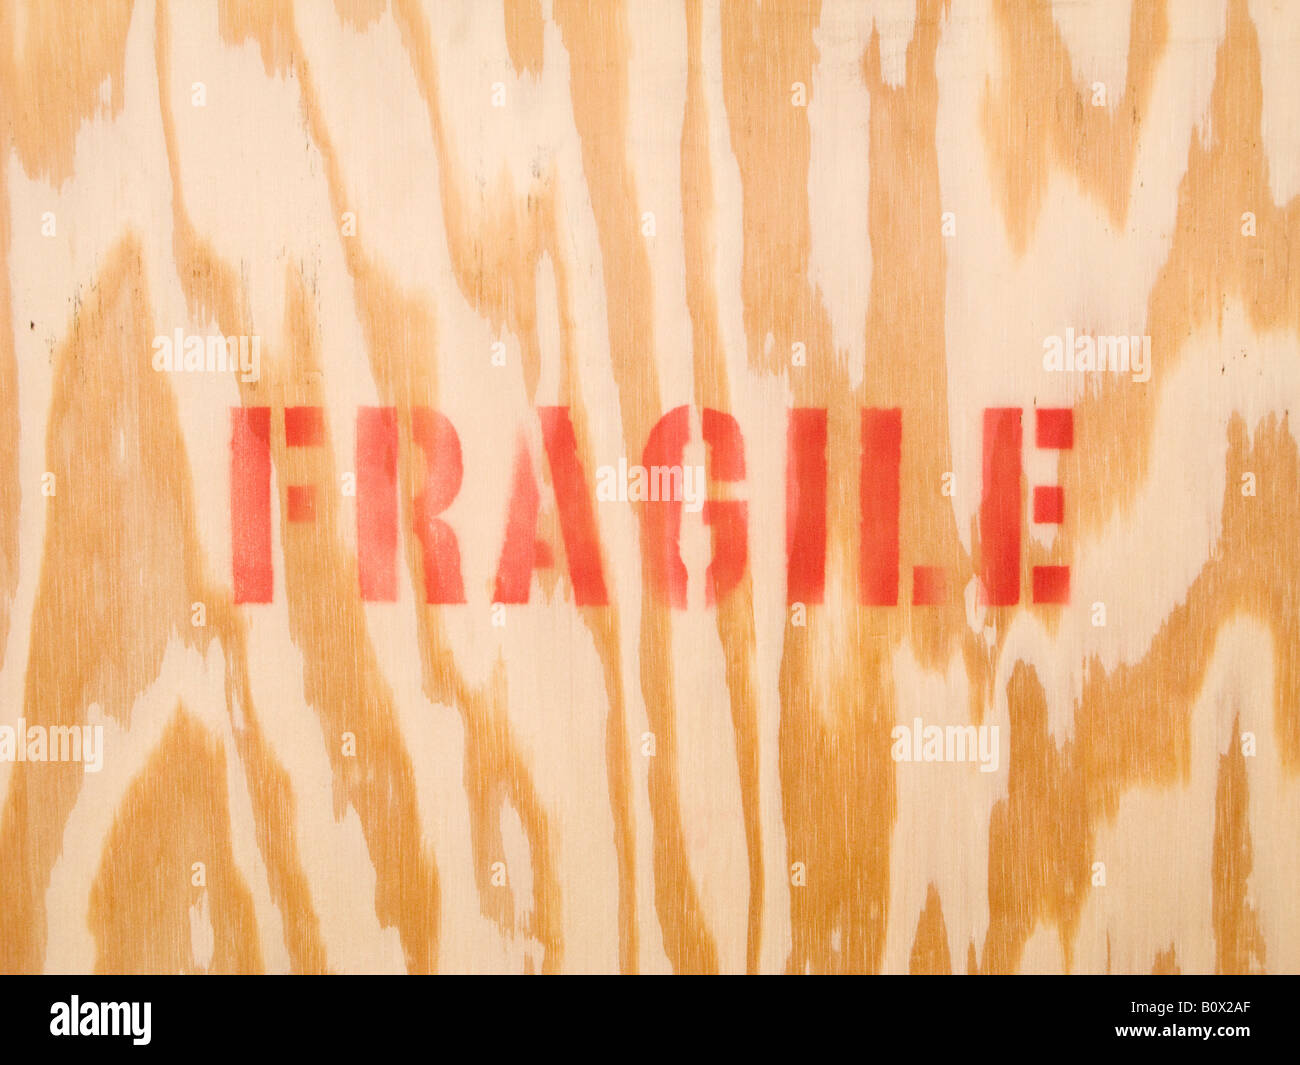 La parola fragile stampata su legno Foto Stock